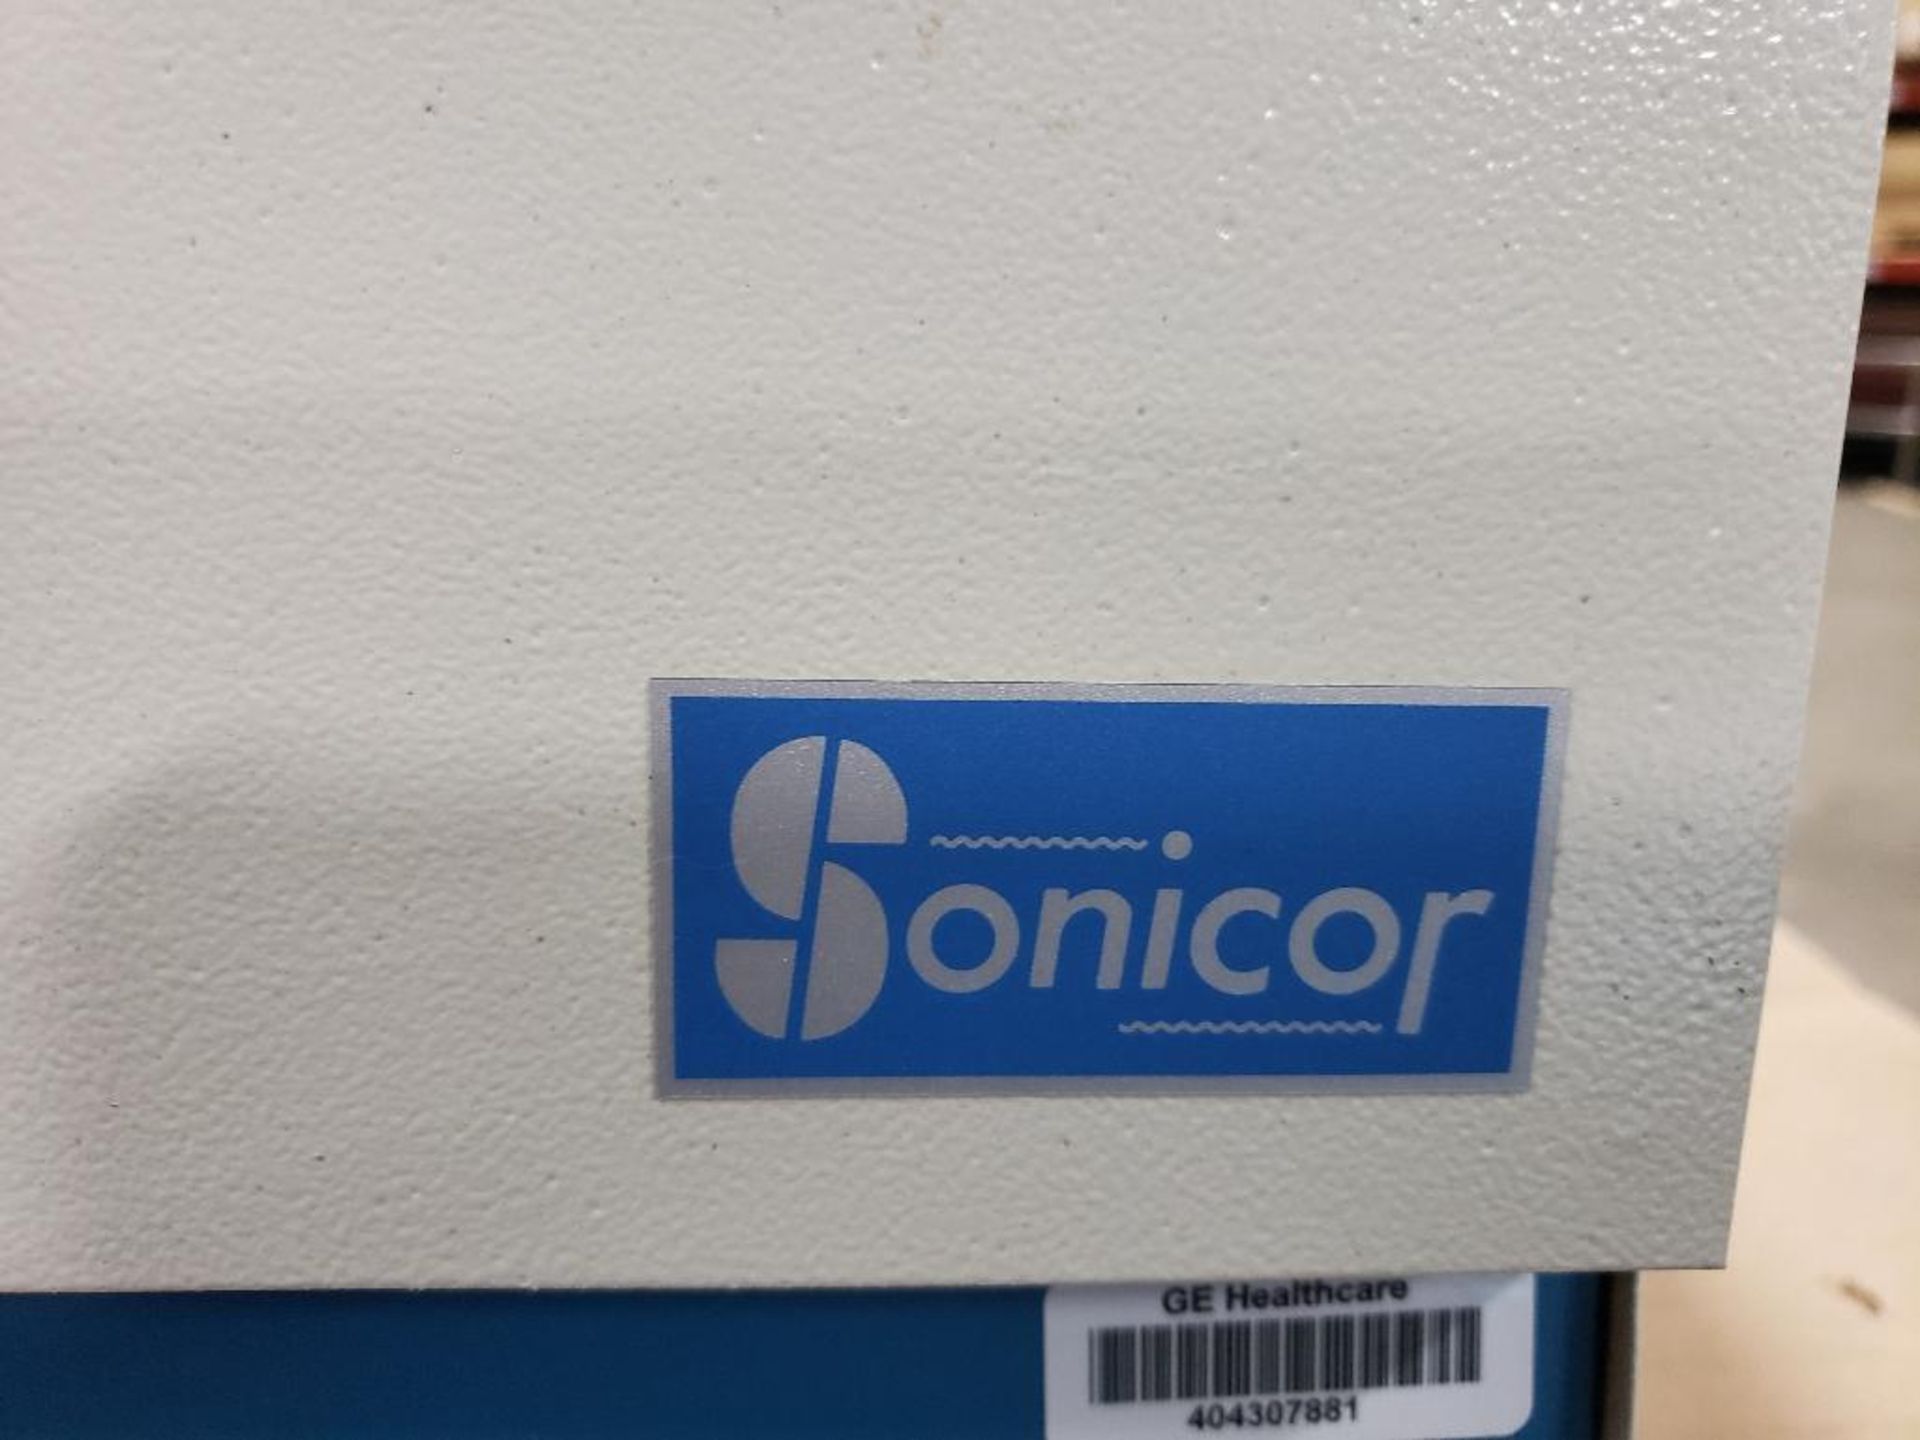 Sonicor ultrasonic cleaner. Model SC-101T/D. 120v single phase. - Image 2 of 6